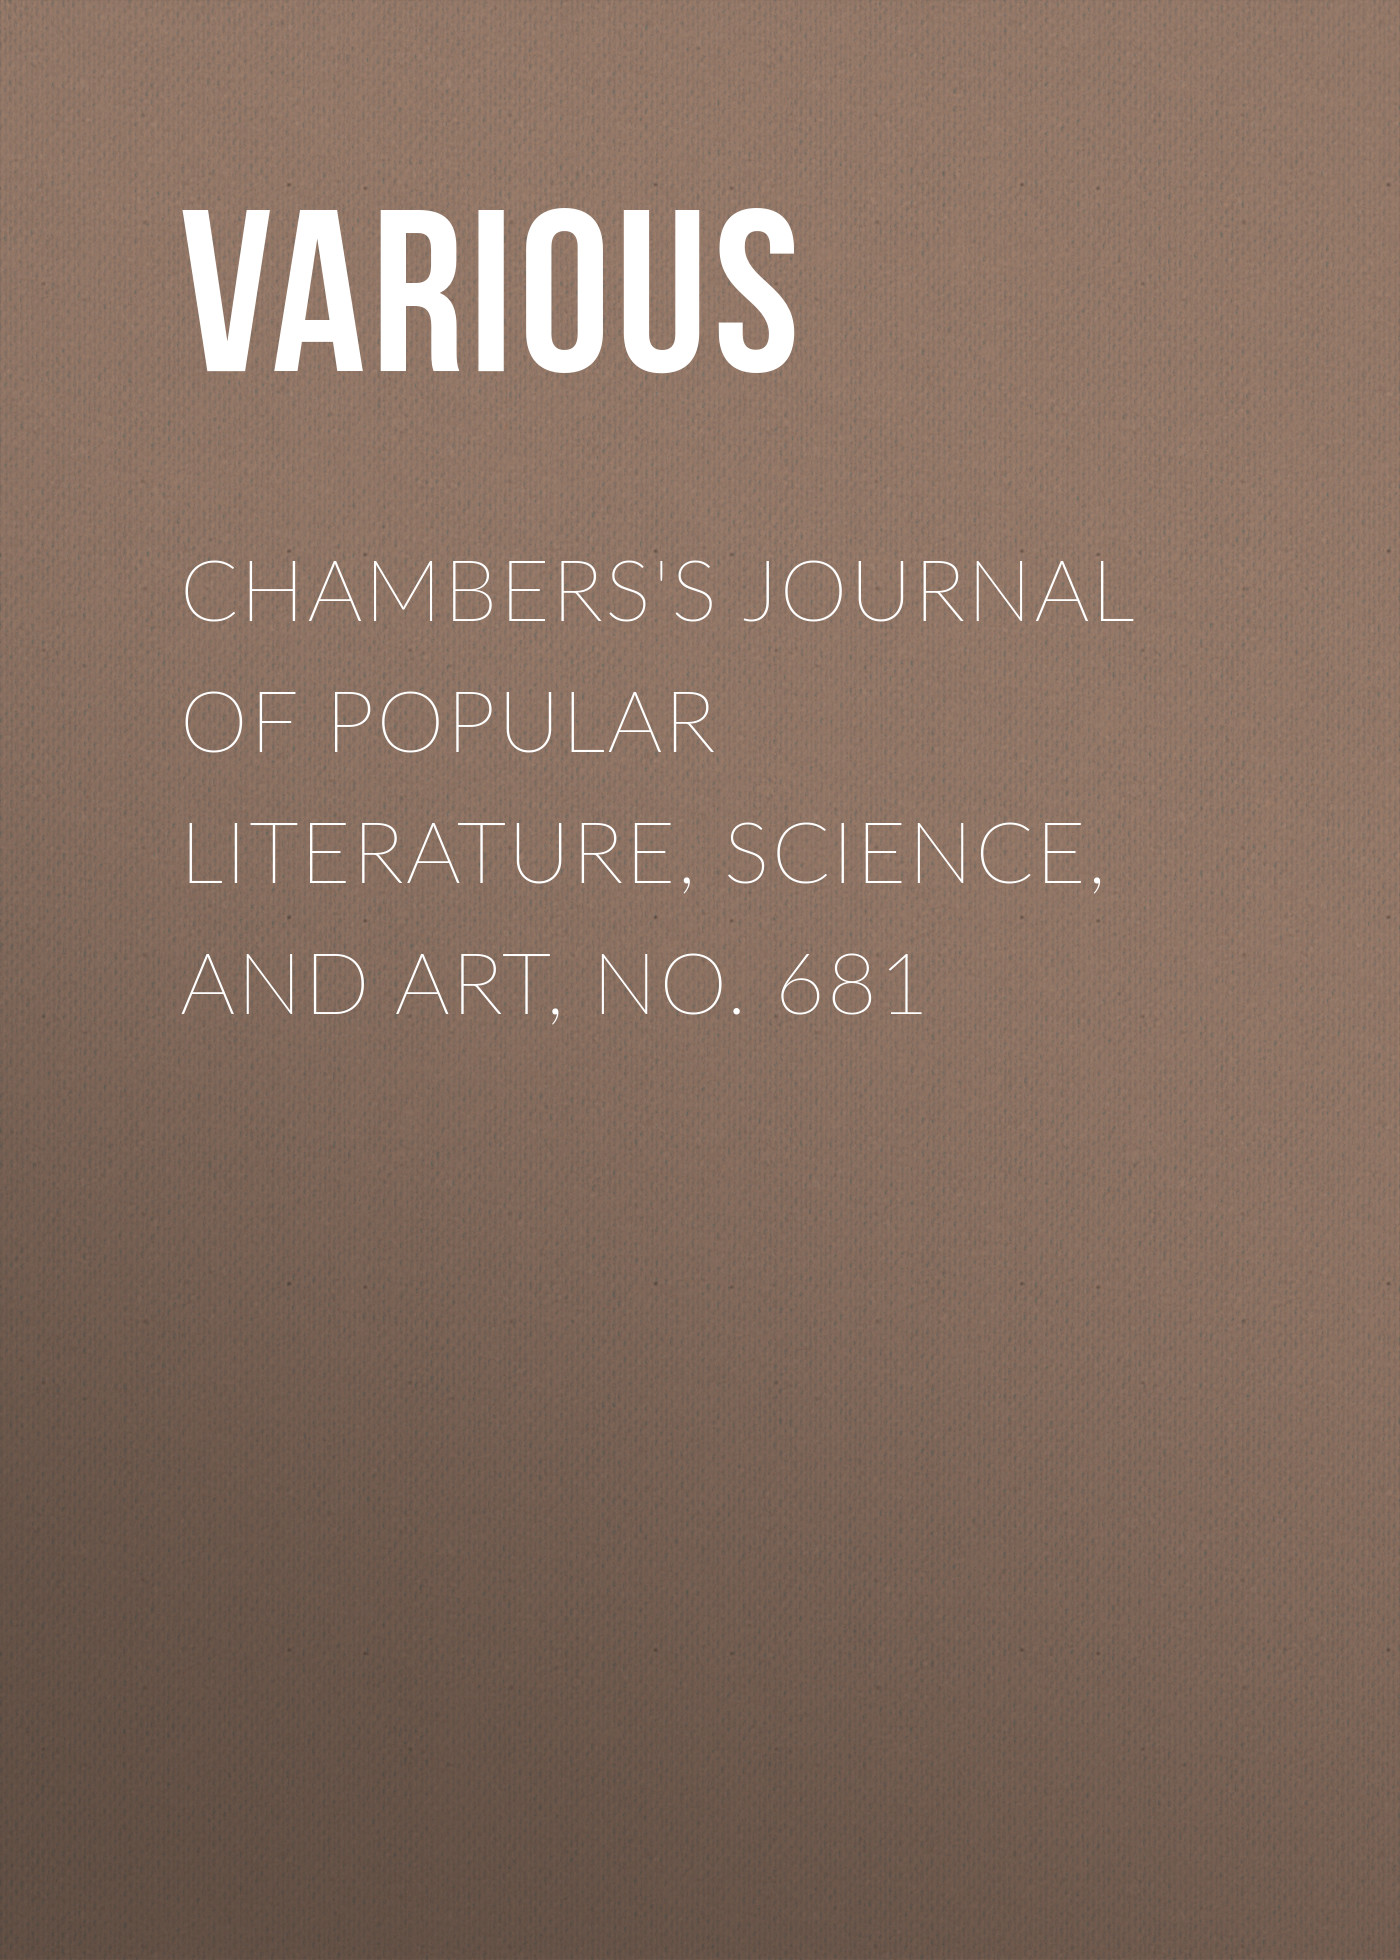 Книга Chambers's Journal of Popular Literature, Science, and Art, No. 681 из серии , созданная  Various, может относится к жанру Журналы, Зарубежная образовательная литература. Стоимость электронной книги Chambers's Journal of Popular Literature, Science, and Art, No. 681 с идентификатором 25569663 составляет 0 руб.